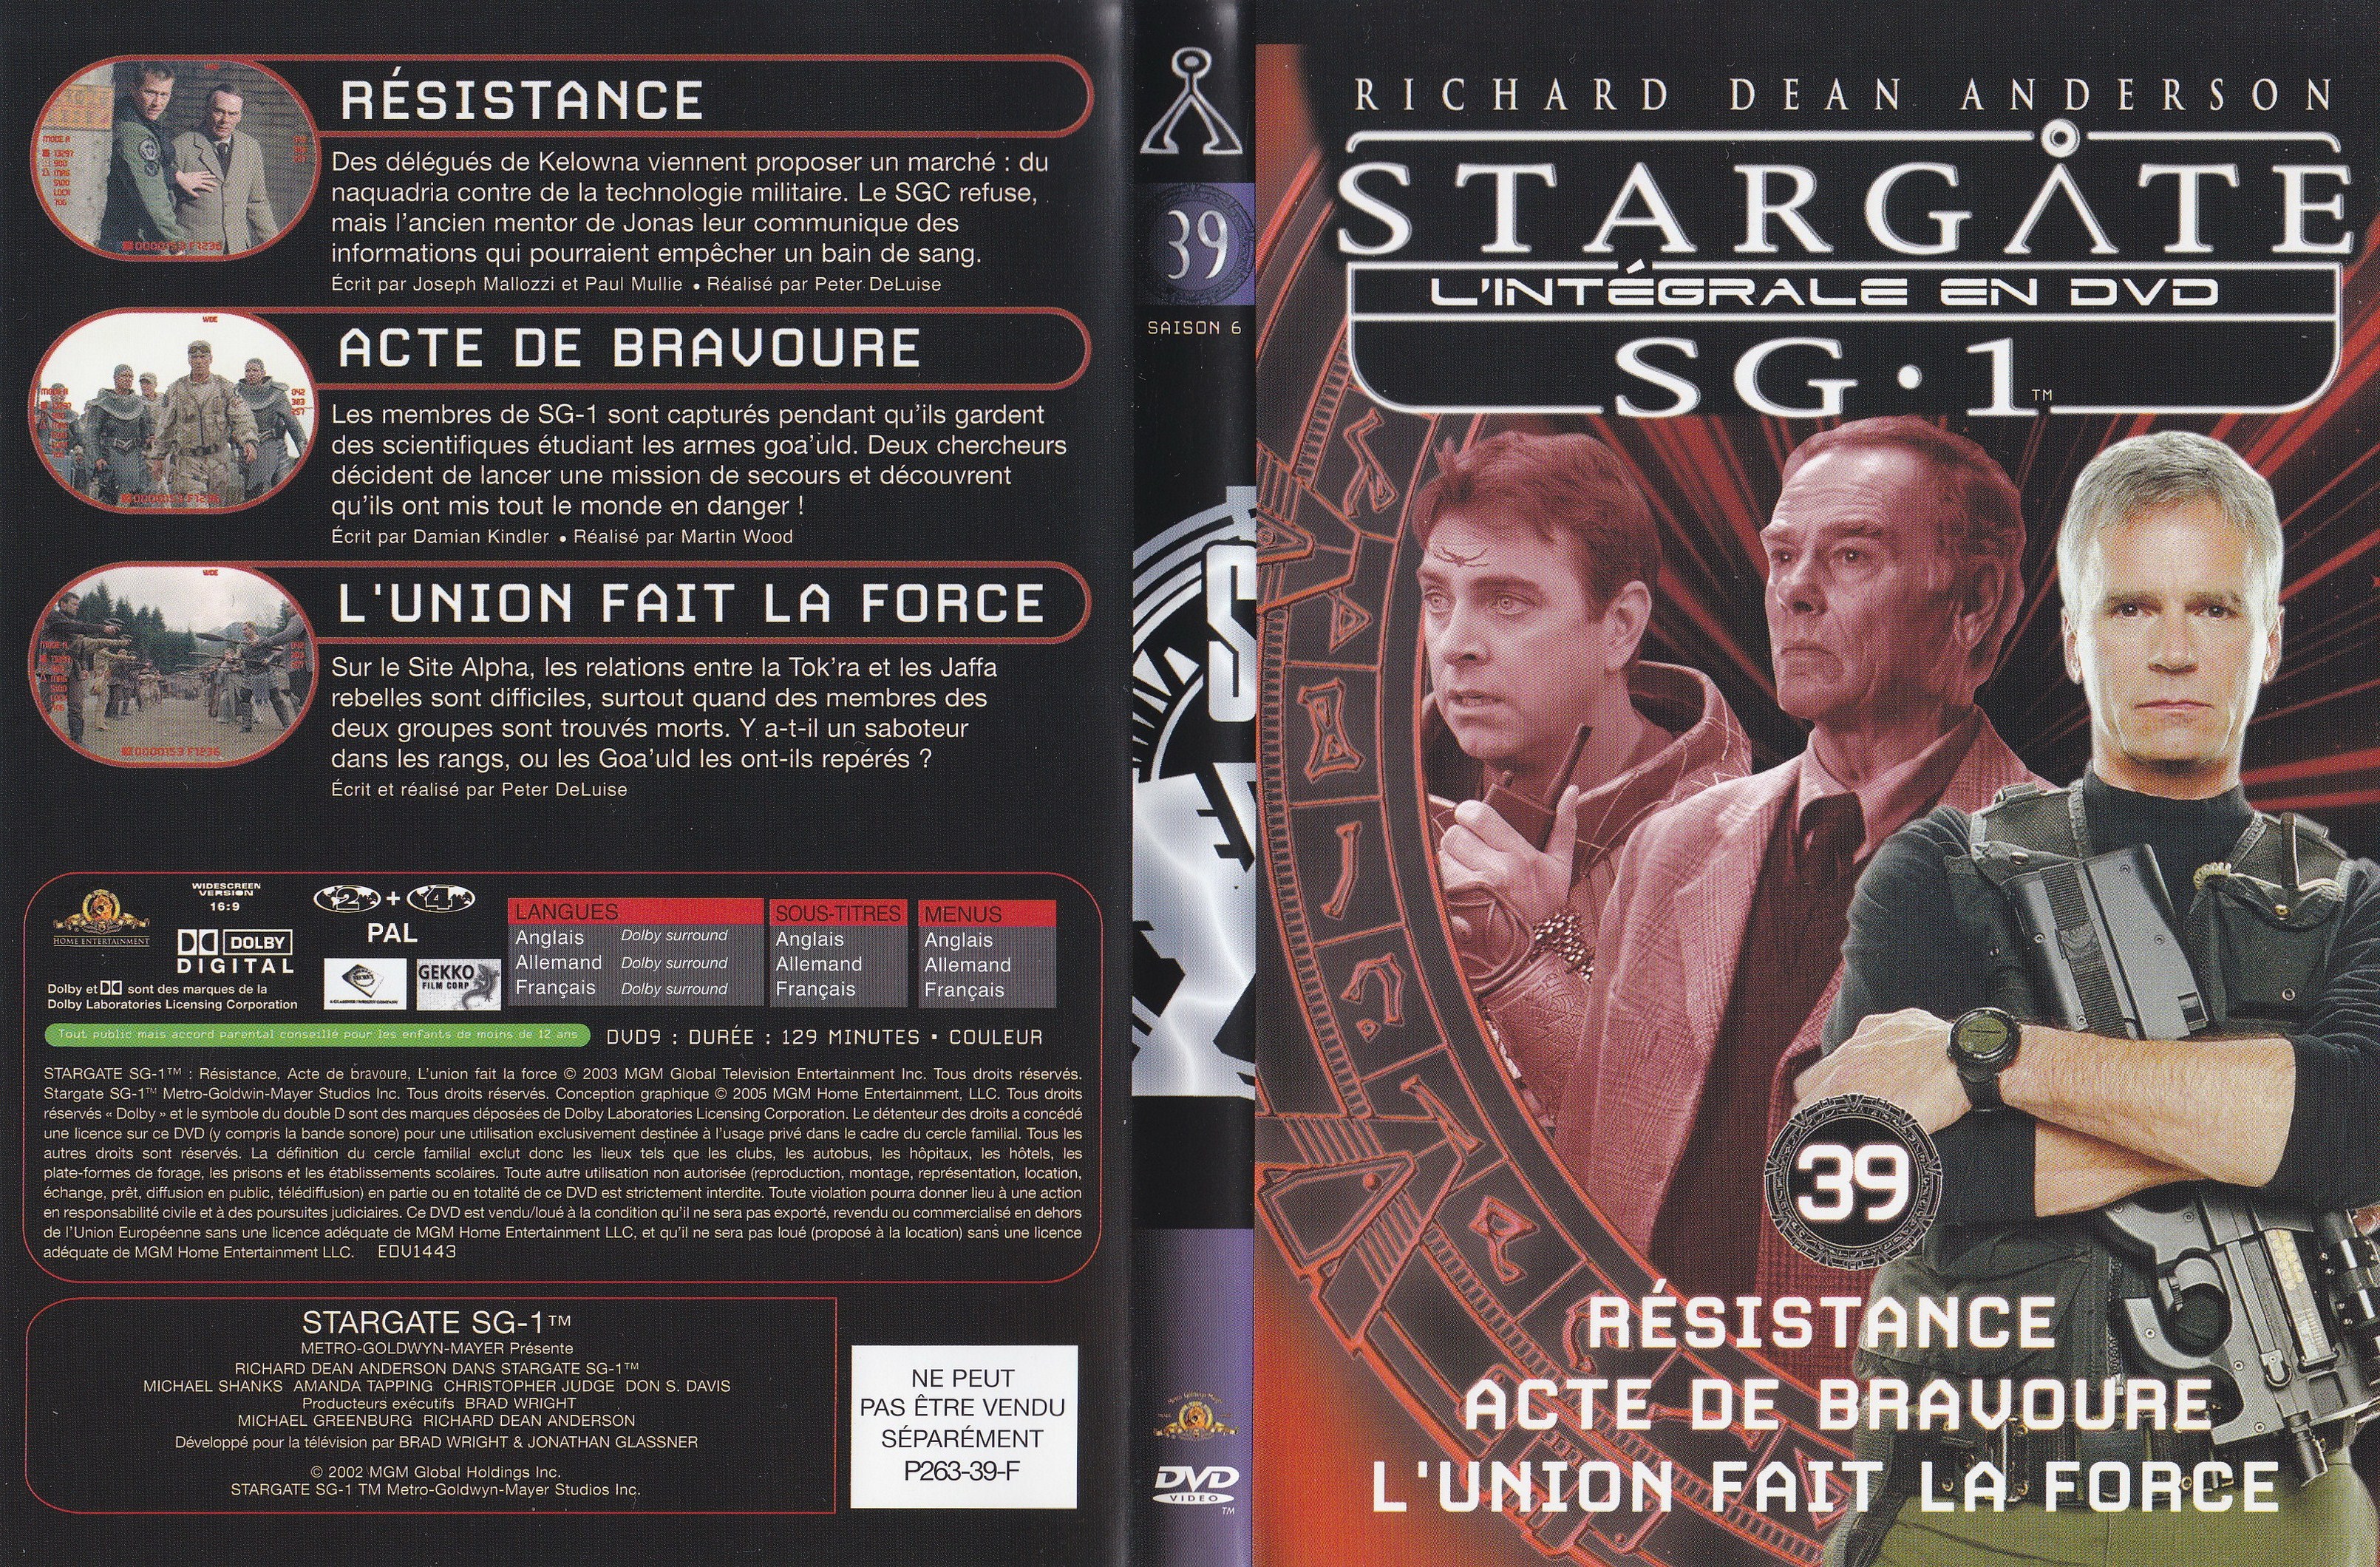 Jaquette DVD Stargate SG1 Intgrale Saison 6 vol 39